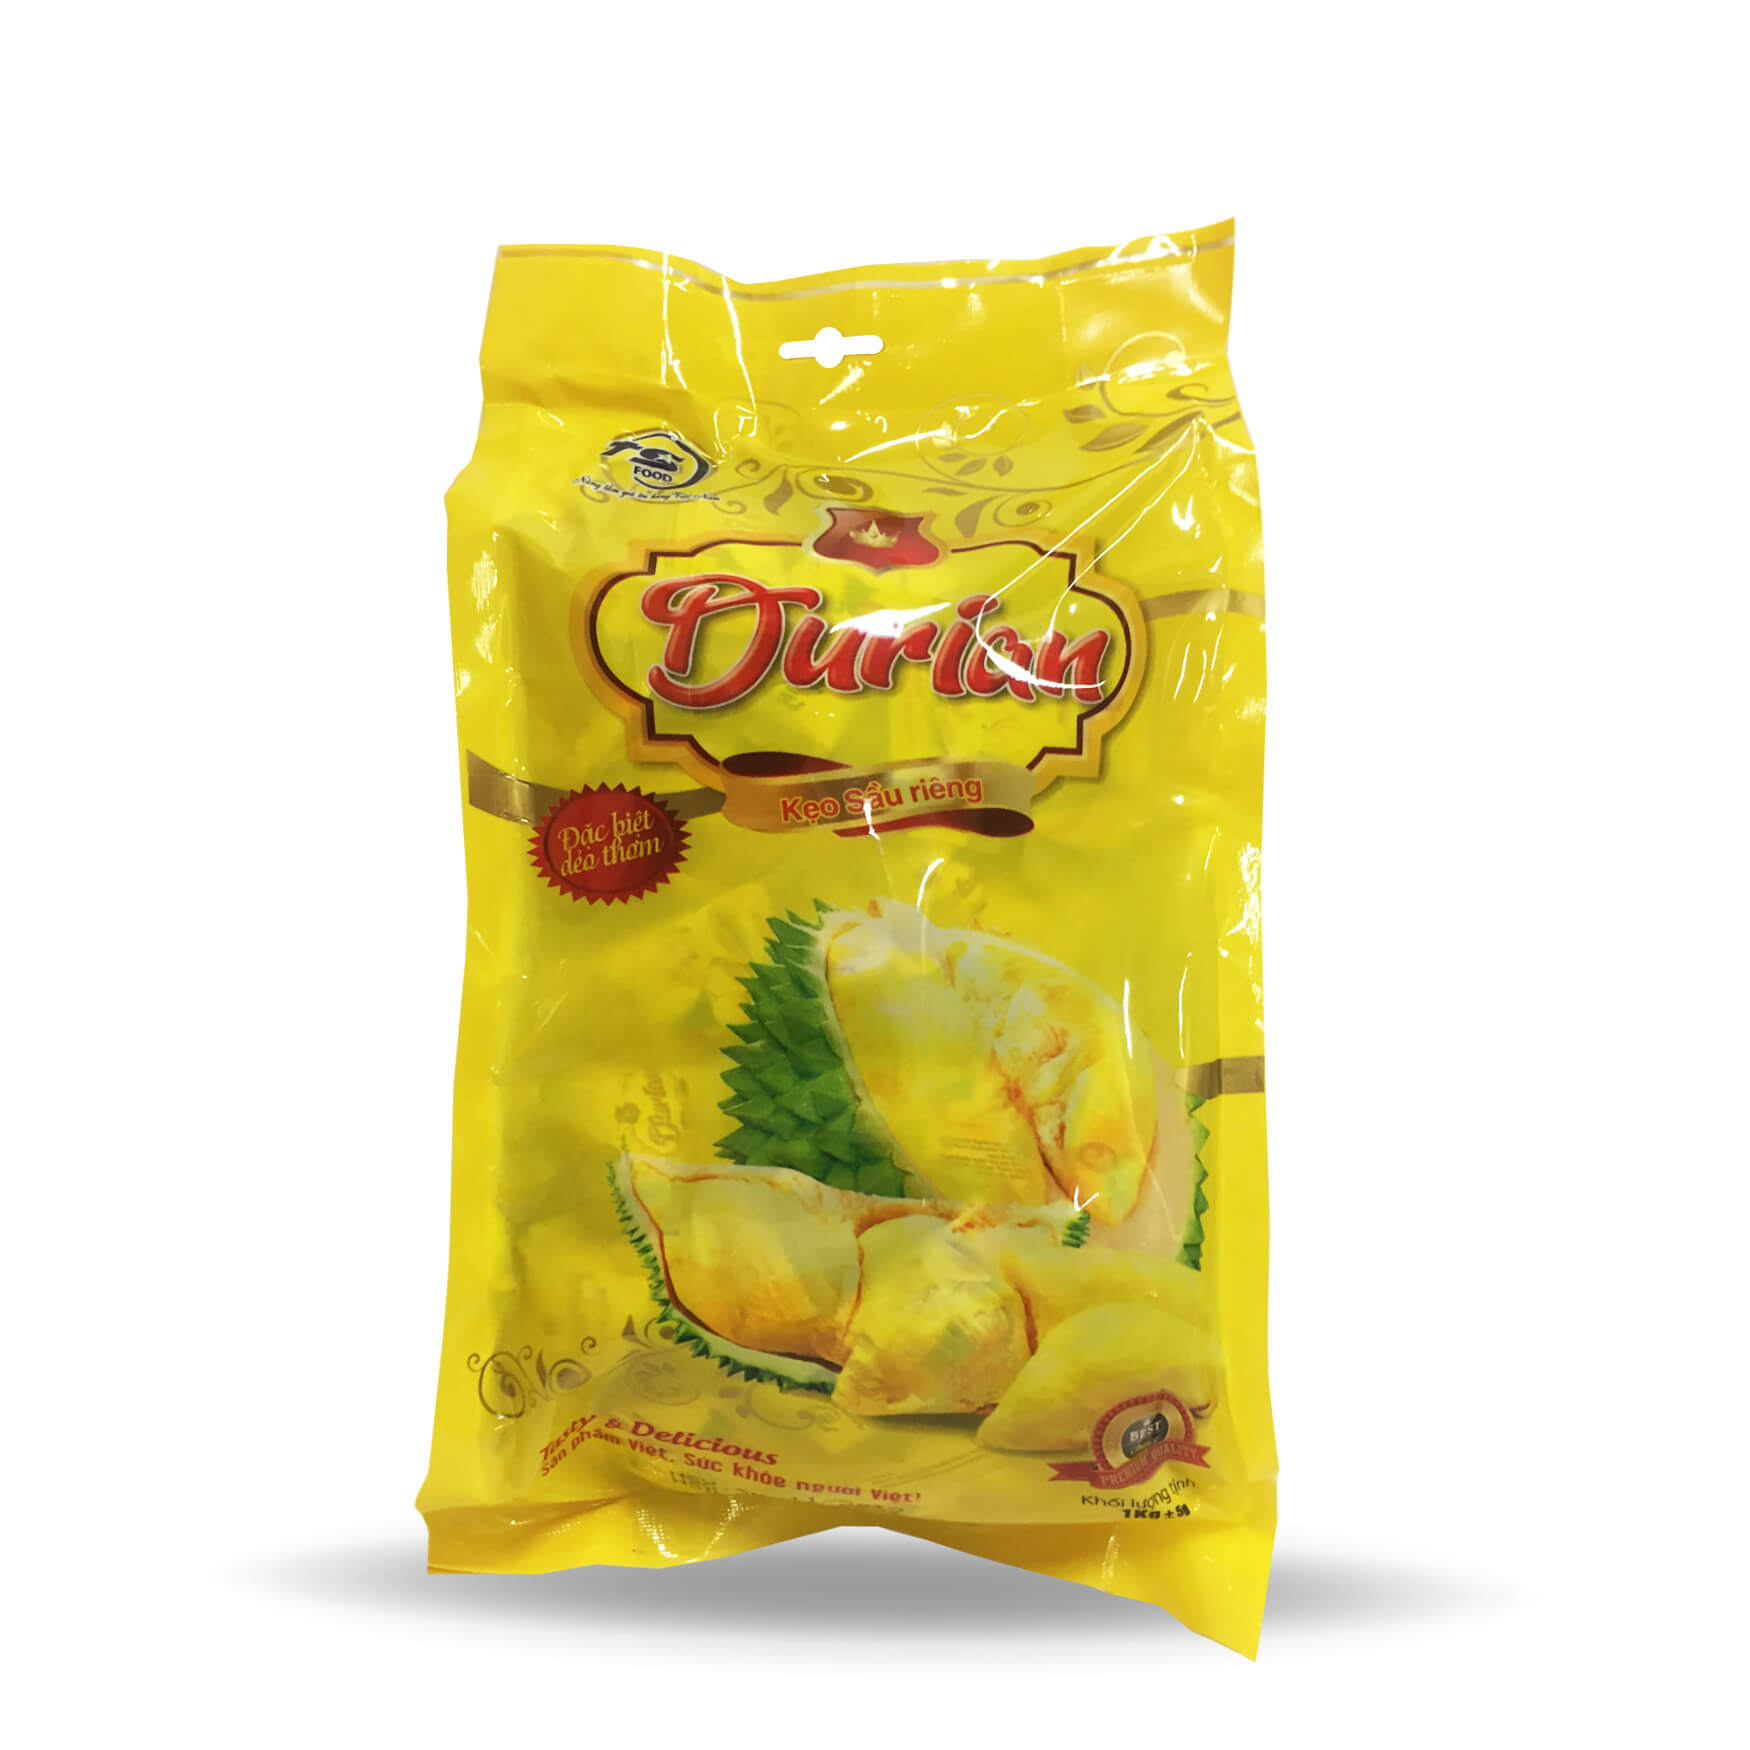 TS Food Конфеты желейные со вкусом дуриана (KẸO SẦU RIÊNG), 1 кг 